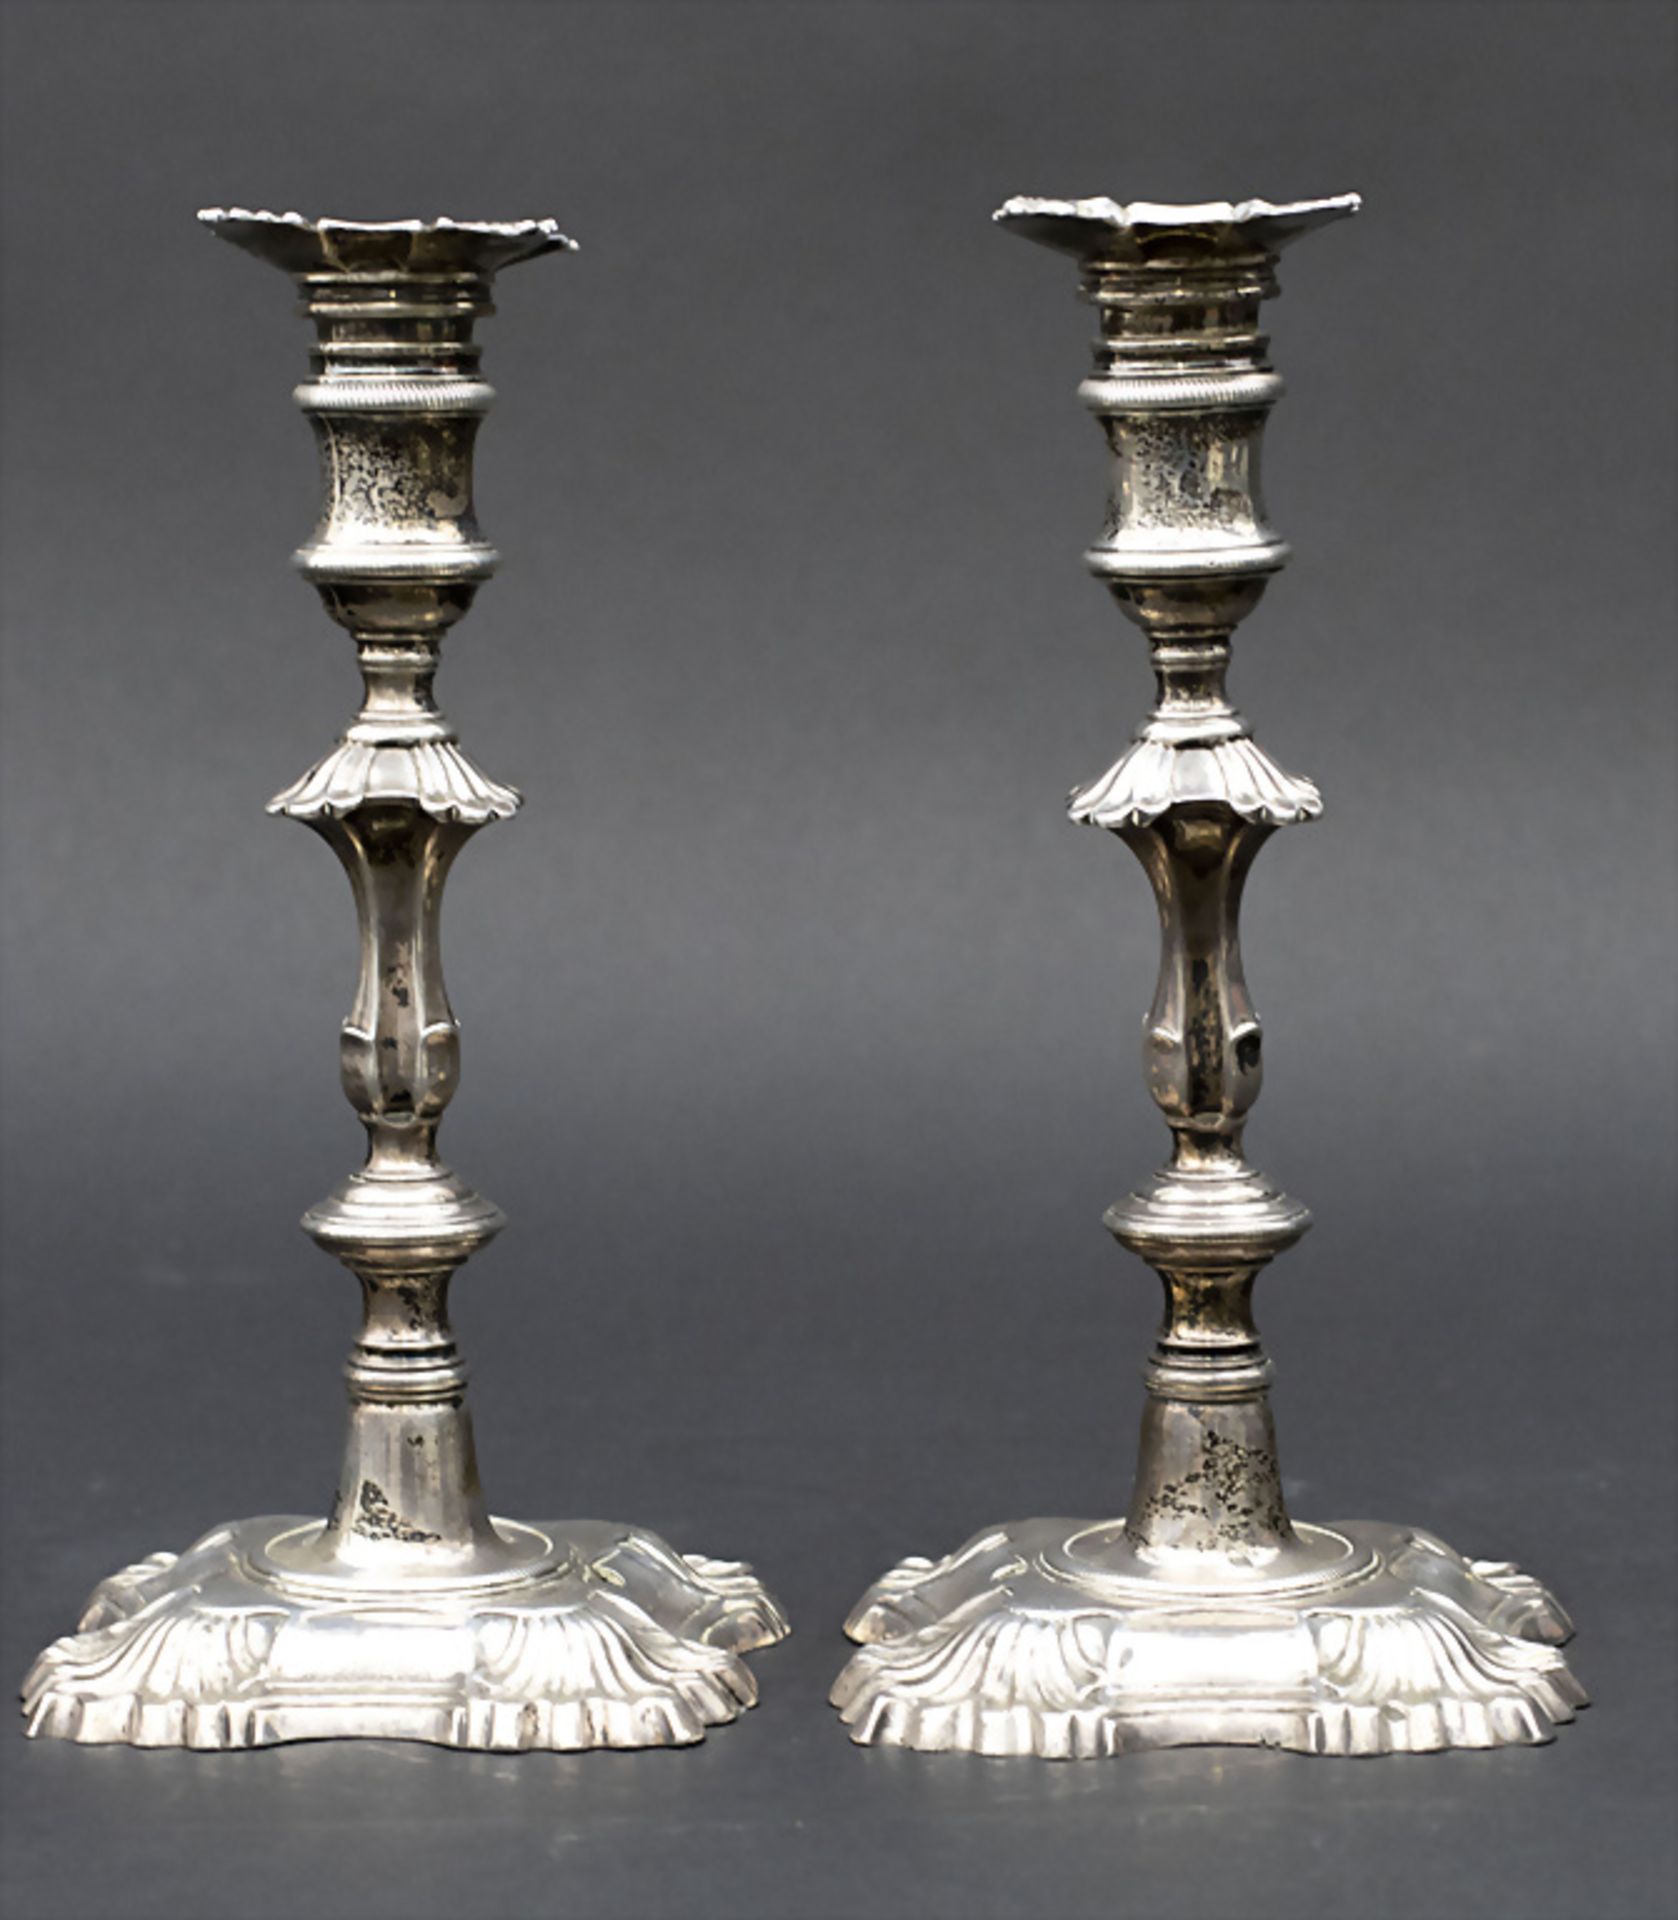 Paar Barock Kerzenleuchter / A pair of Baroque silver candlesticks, Edward Wakelin, London, 1758